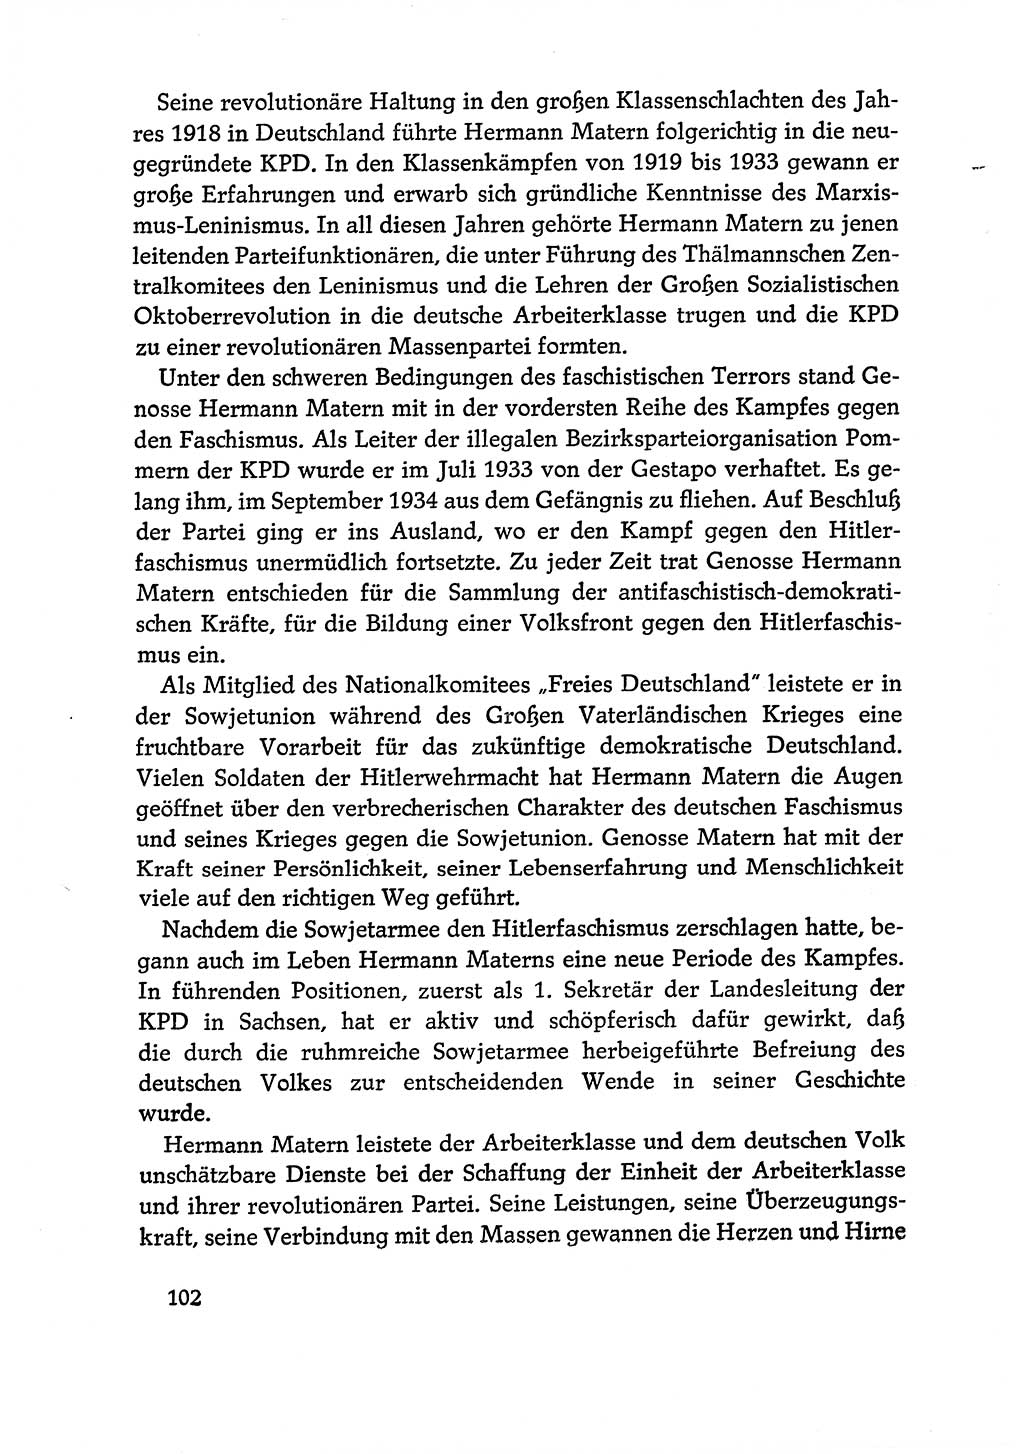 Dokumente der Sozialistischen Einheitspartei Deutschlands (SED) [Deutsche Demokratische Republik (DDR)] 1970-1971, Seite 102 (Dok. SED DDR 1970-1971, S. 102)